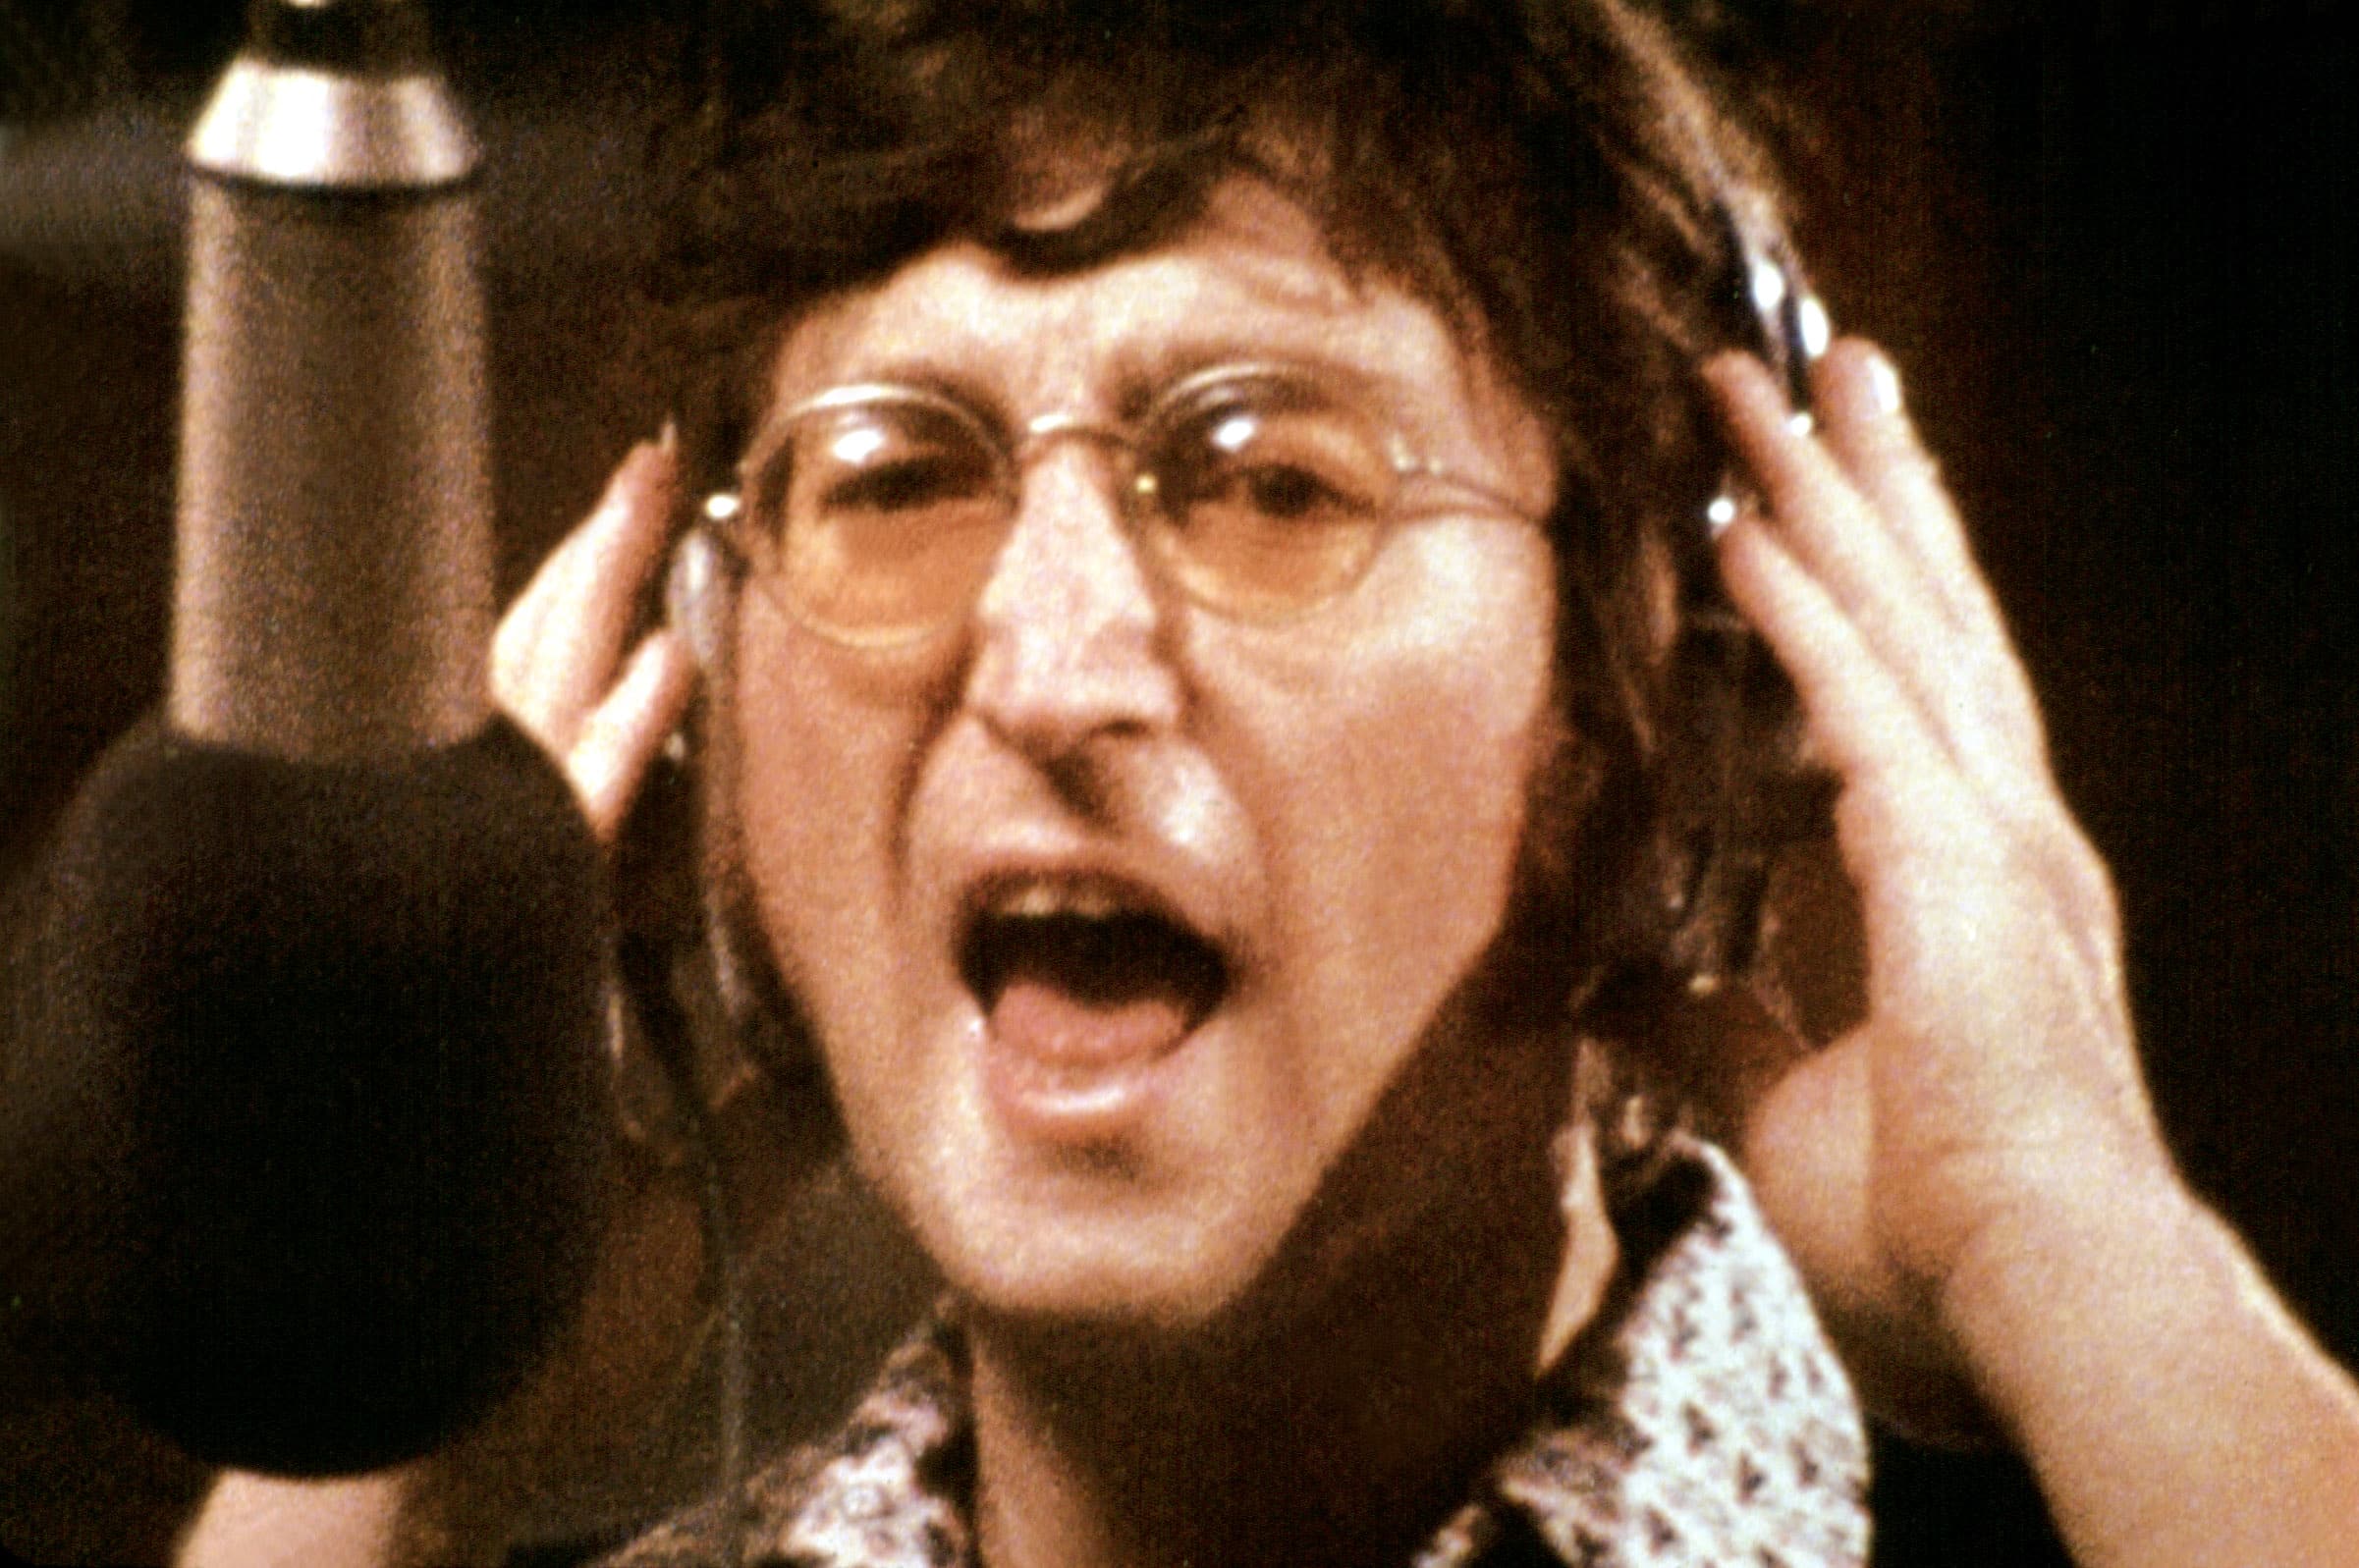 IMAGINE: JOHN LENNON, John Lennon, 1988, photo from recording of 'Imagine' album, 1971